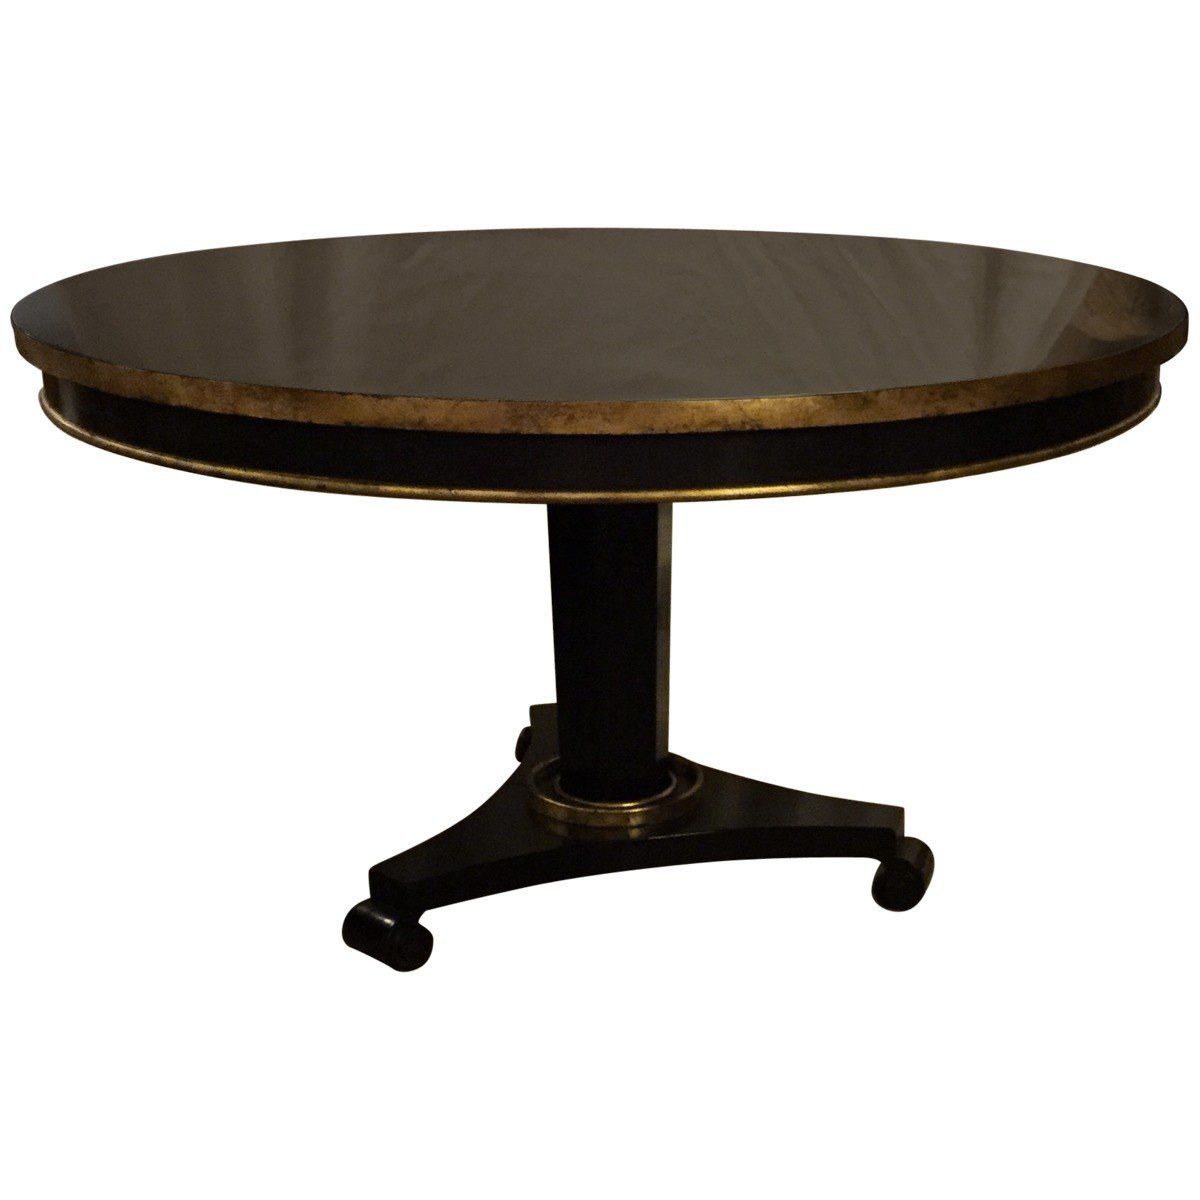 Round Pedestal Base Dining Table Regarding Current Johnson Round Pedestal Dining Tables (View 11 of 25)